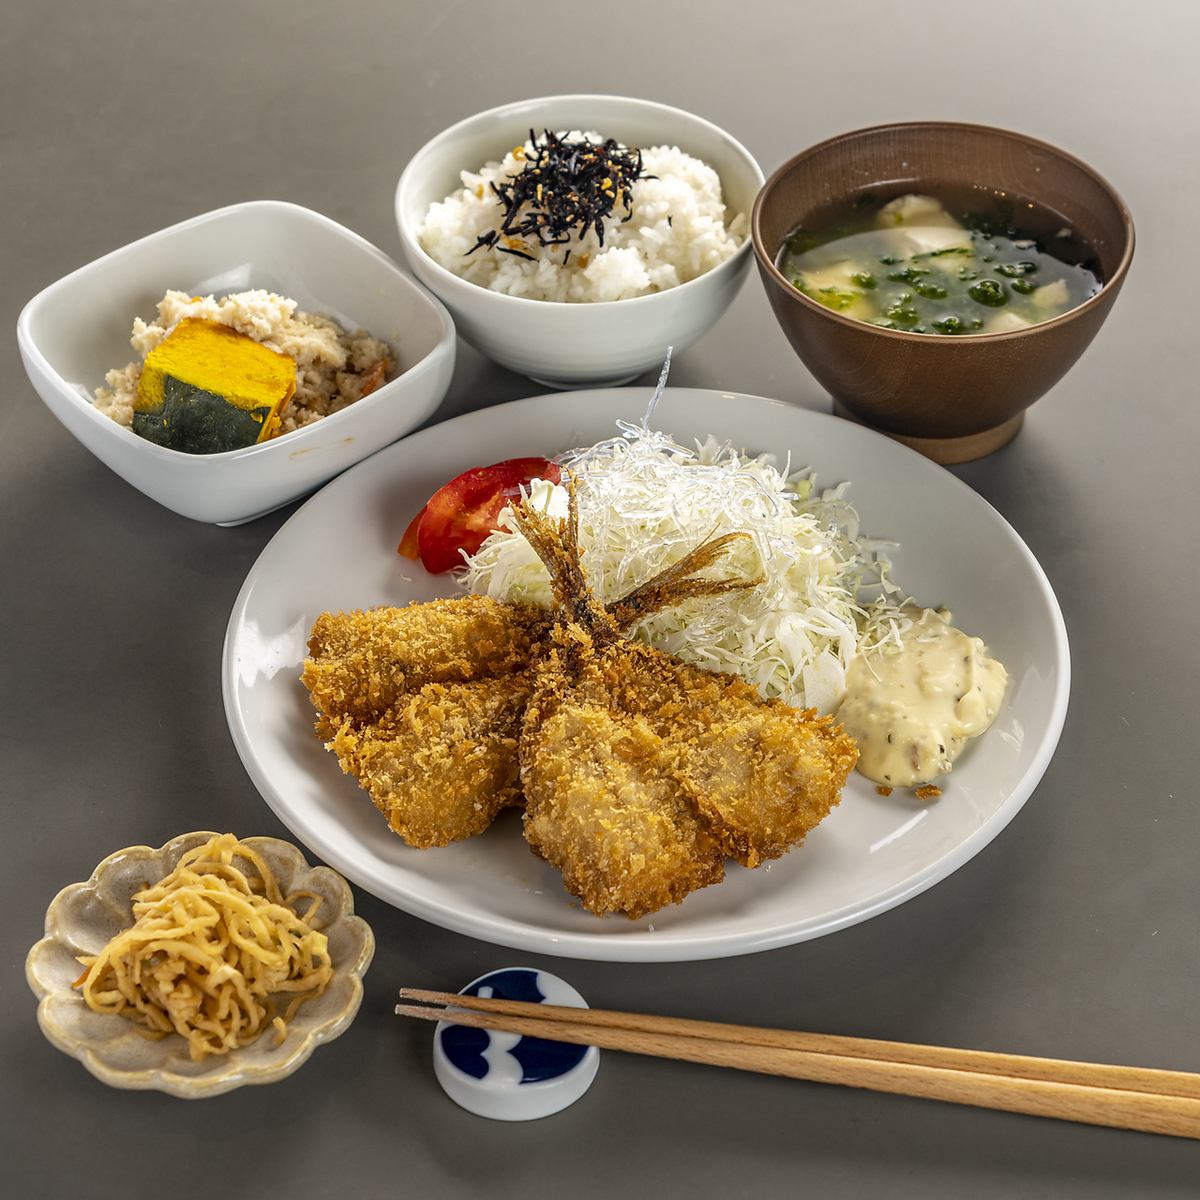 使用精心挑選的 Saiki 魚的套餐可以全天訂購。